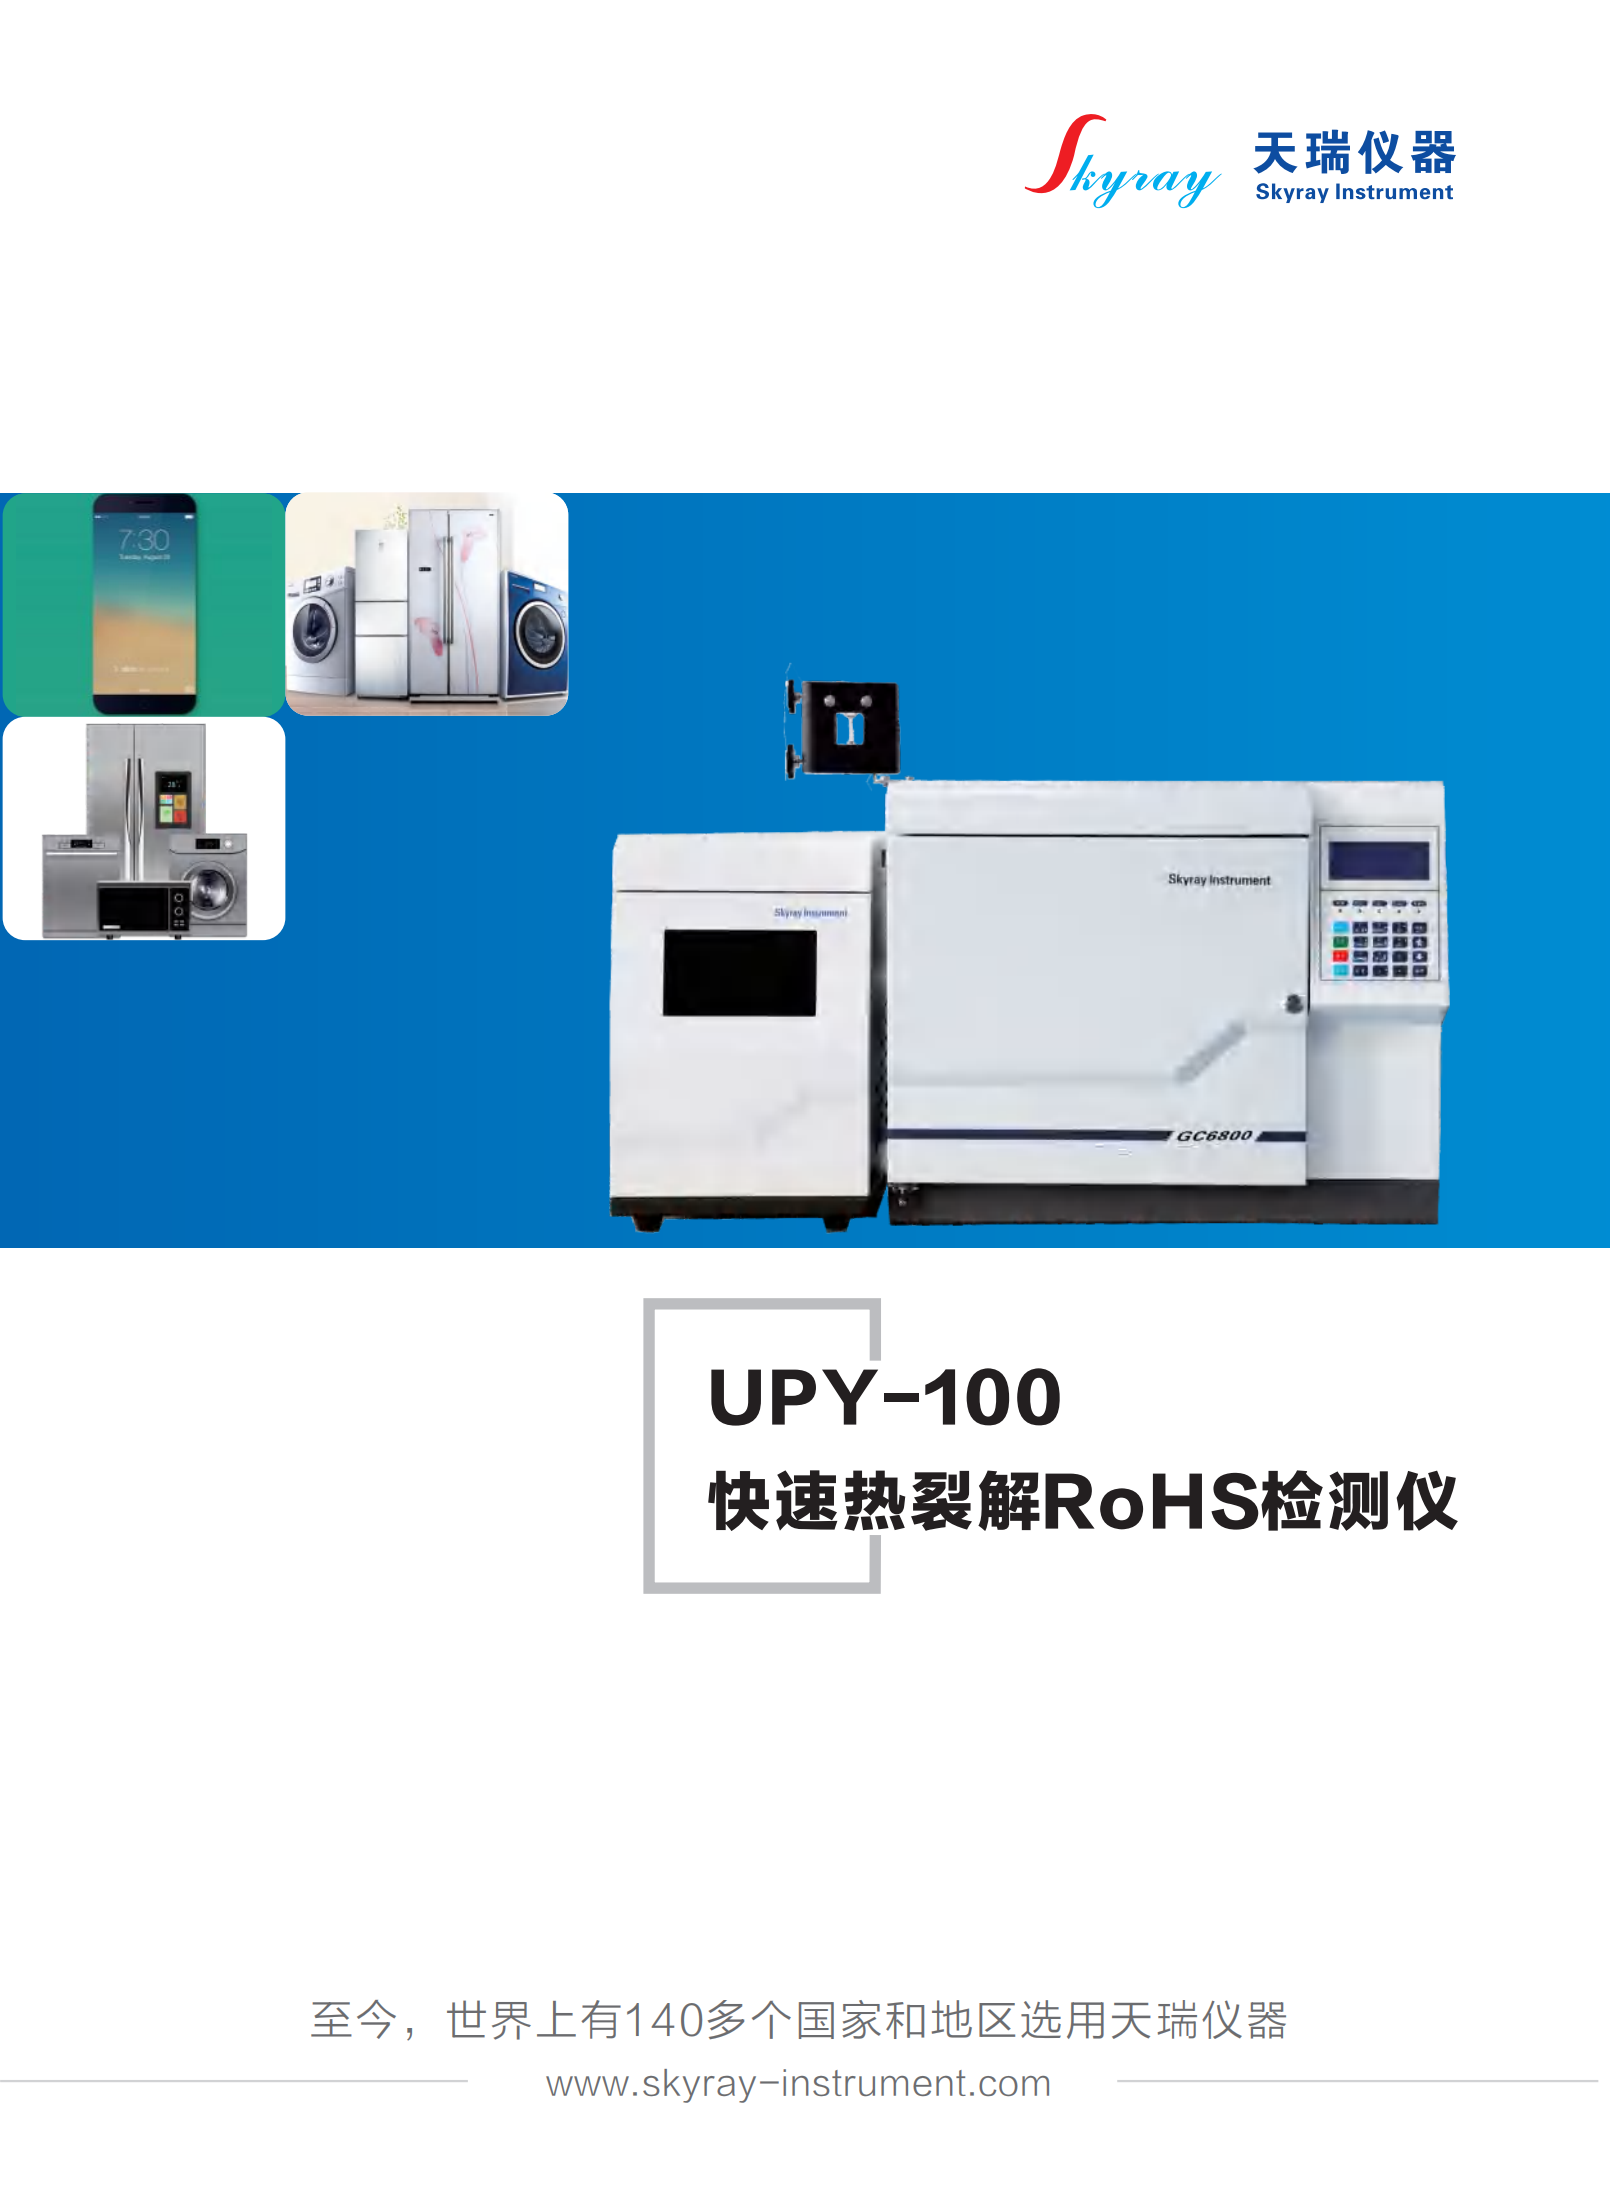 江蘇天瑞儀器股份有限公司-RoHS2.0檢測解決方案（UPY-100熱裂解方案)